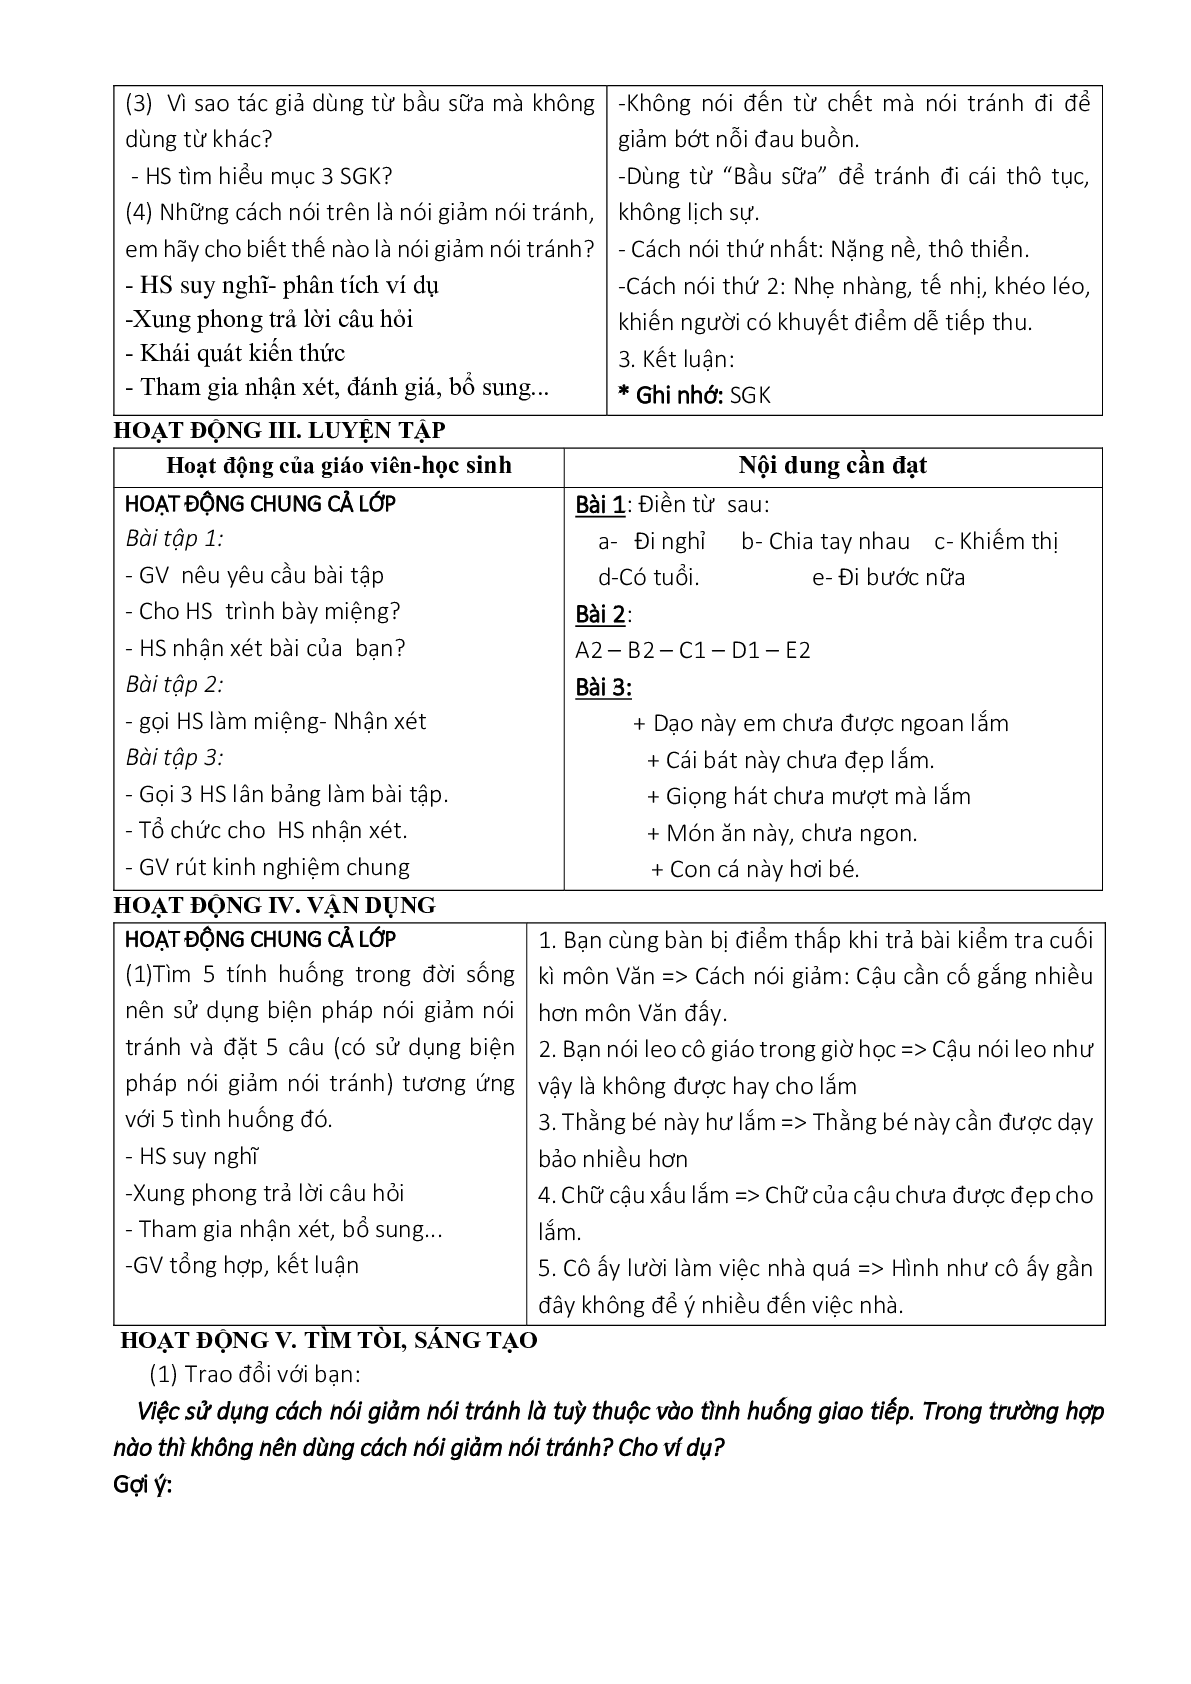 Giáo án ngữ văn lớp 8 Tuần 10 Tiết 40: Nói giảm nói tránh mới nhất (trang 2)